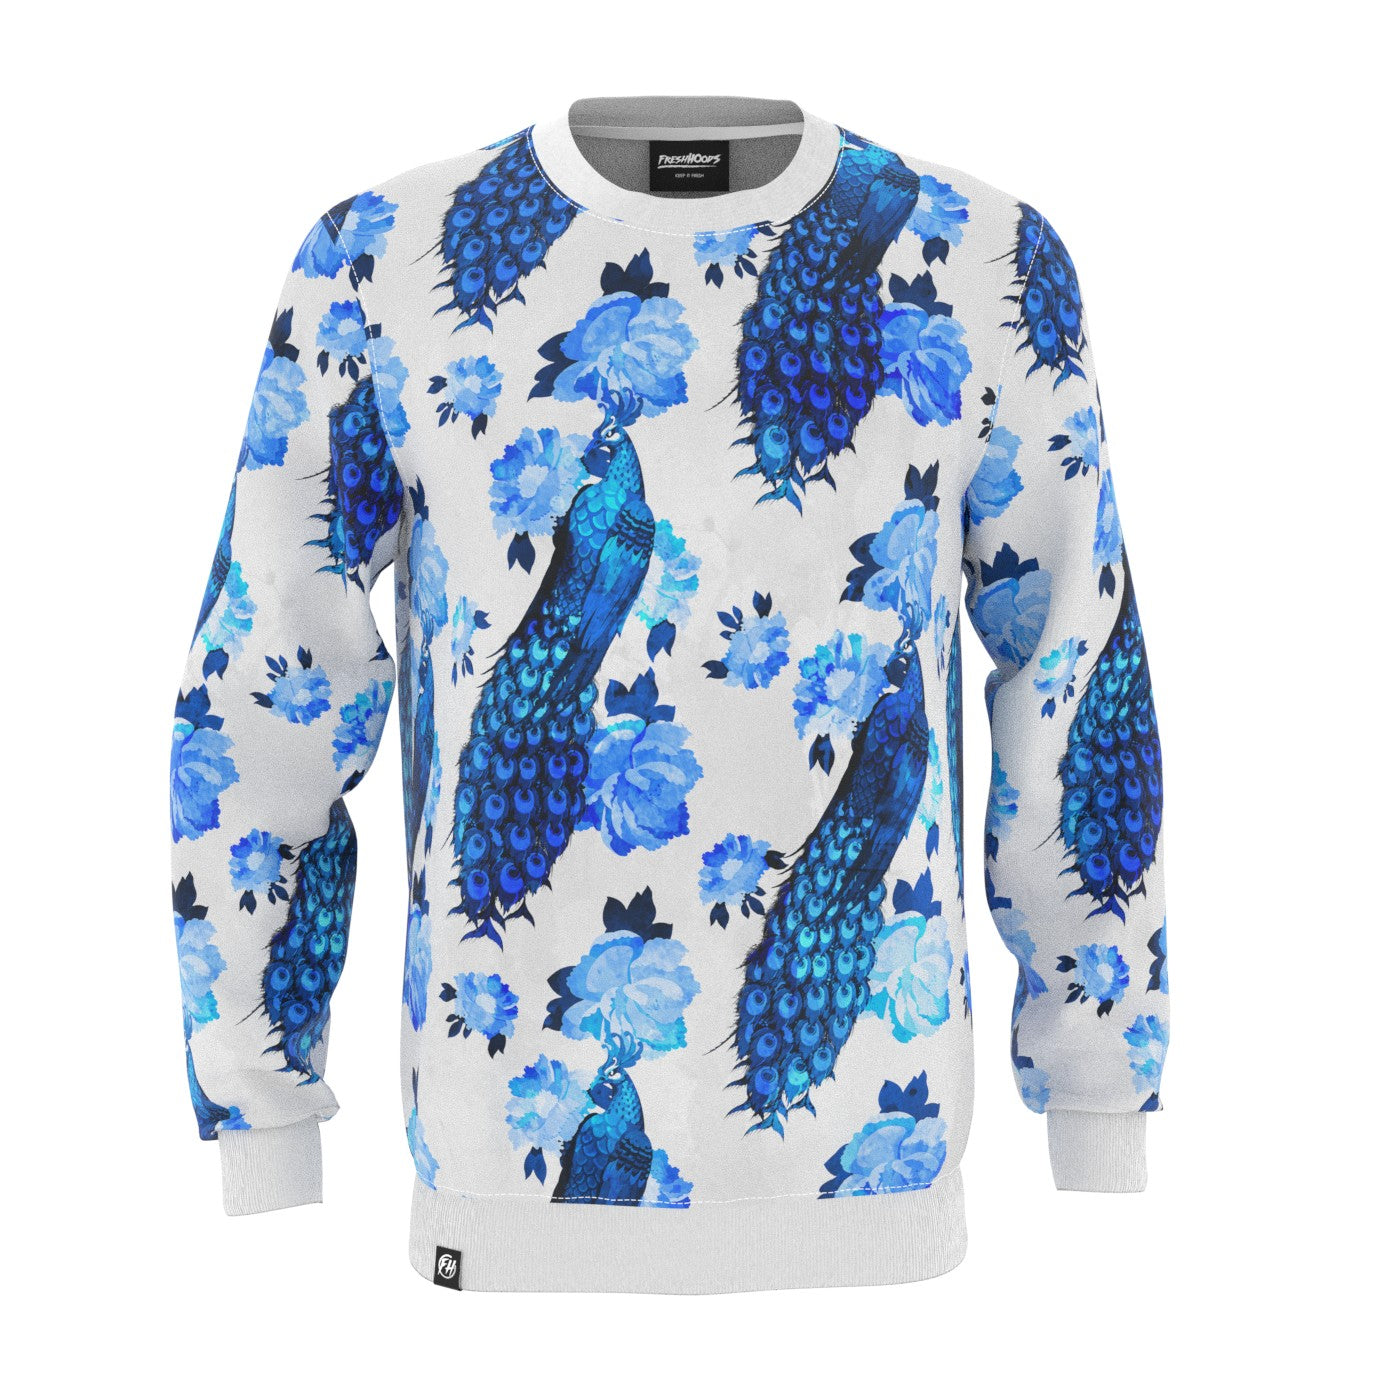 Azure Sweatshirt